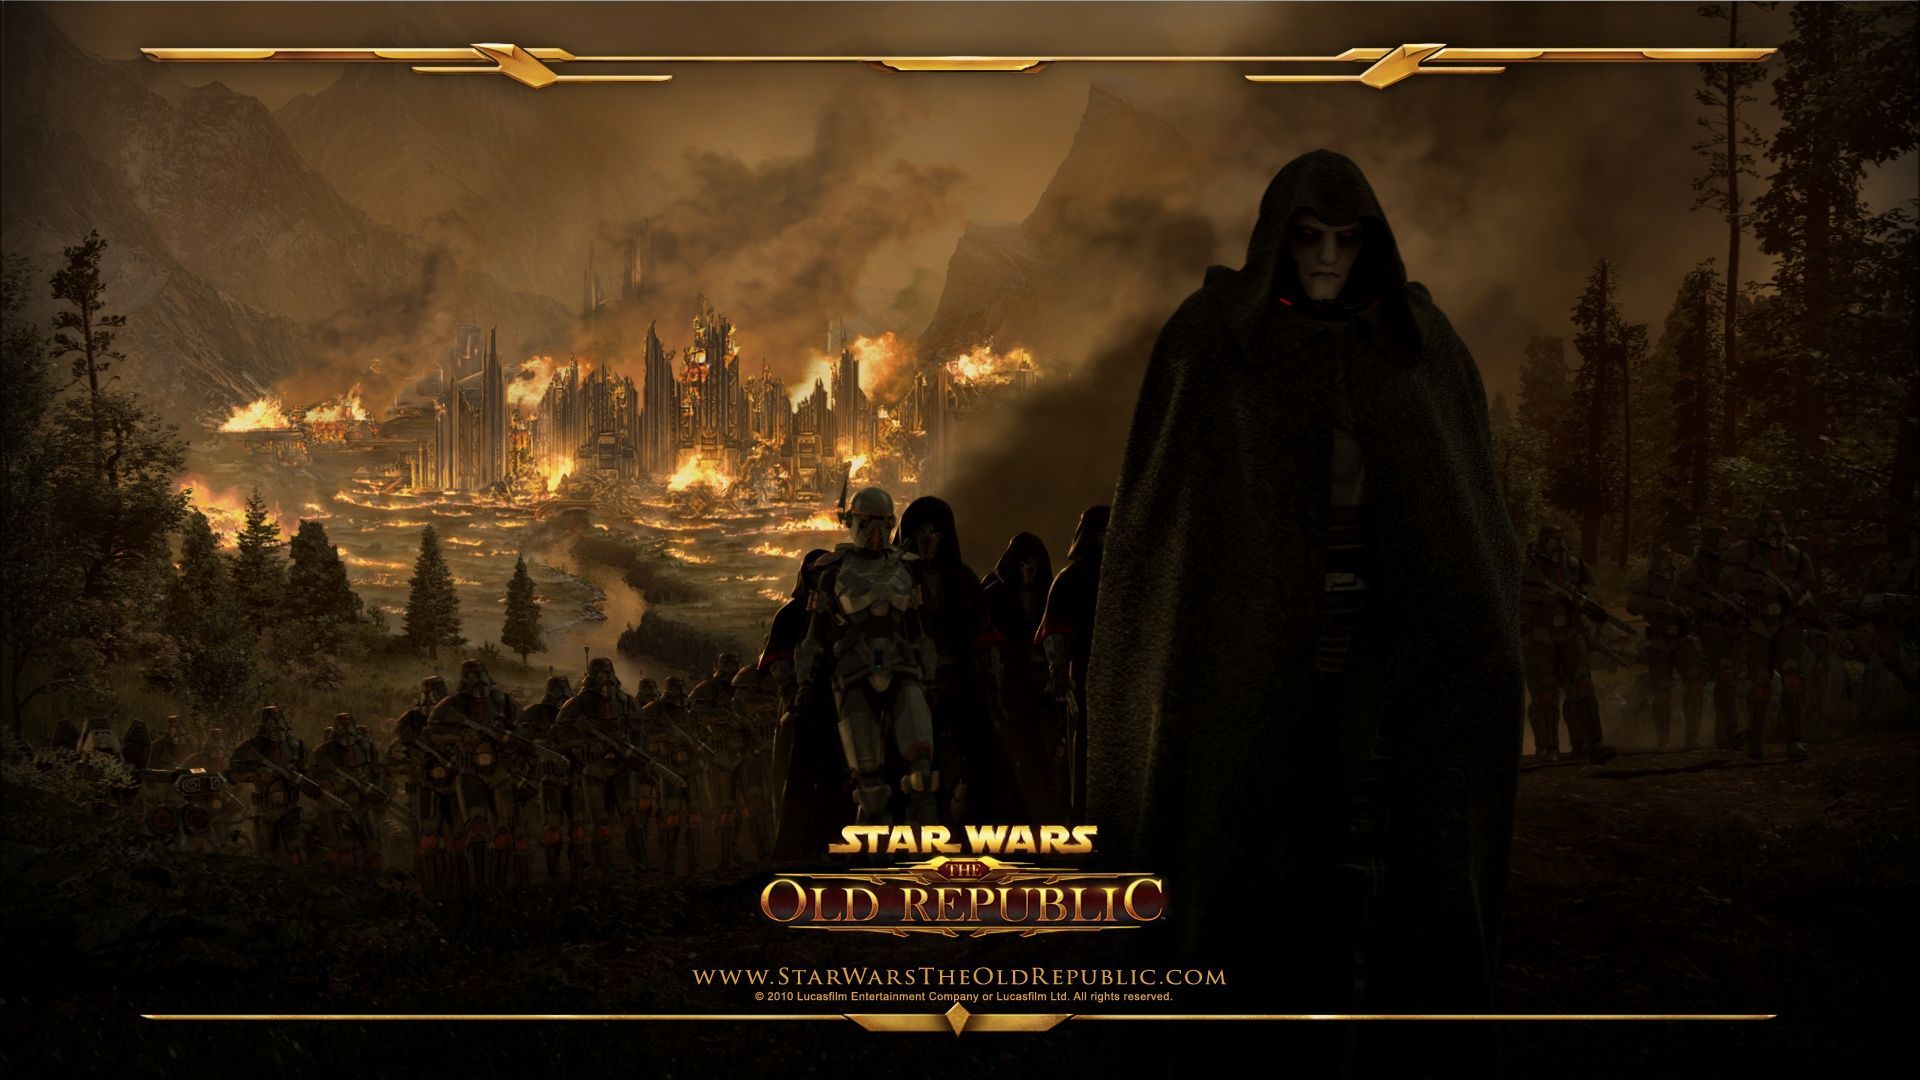 Star Wars- The Old Republic HD Wallpaper | 1920x1080 | ID:24212